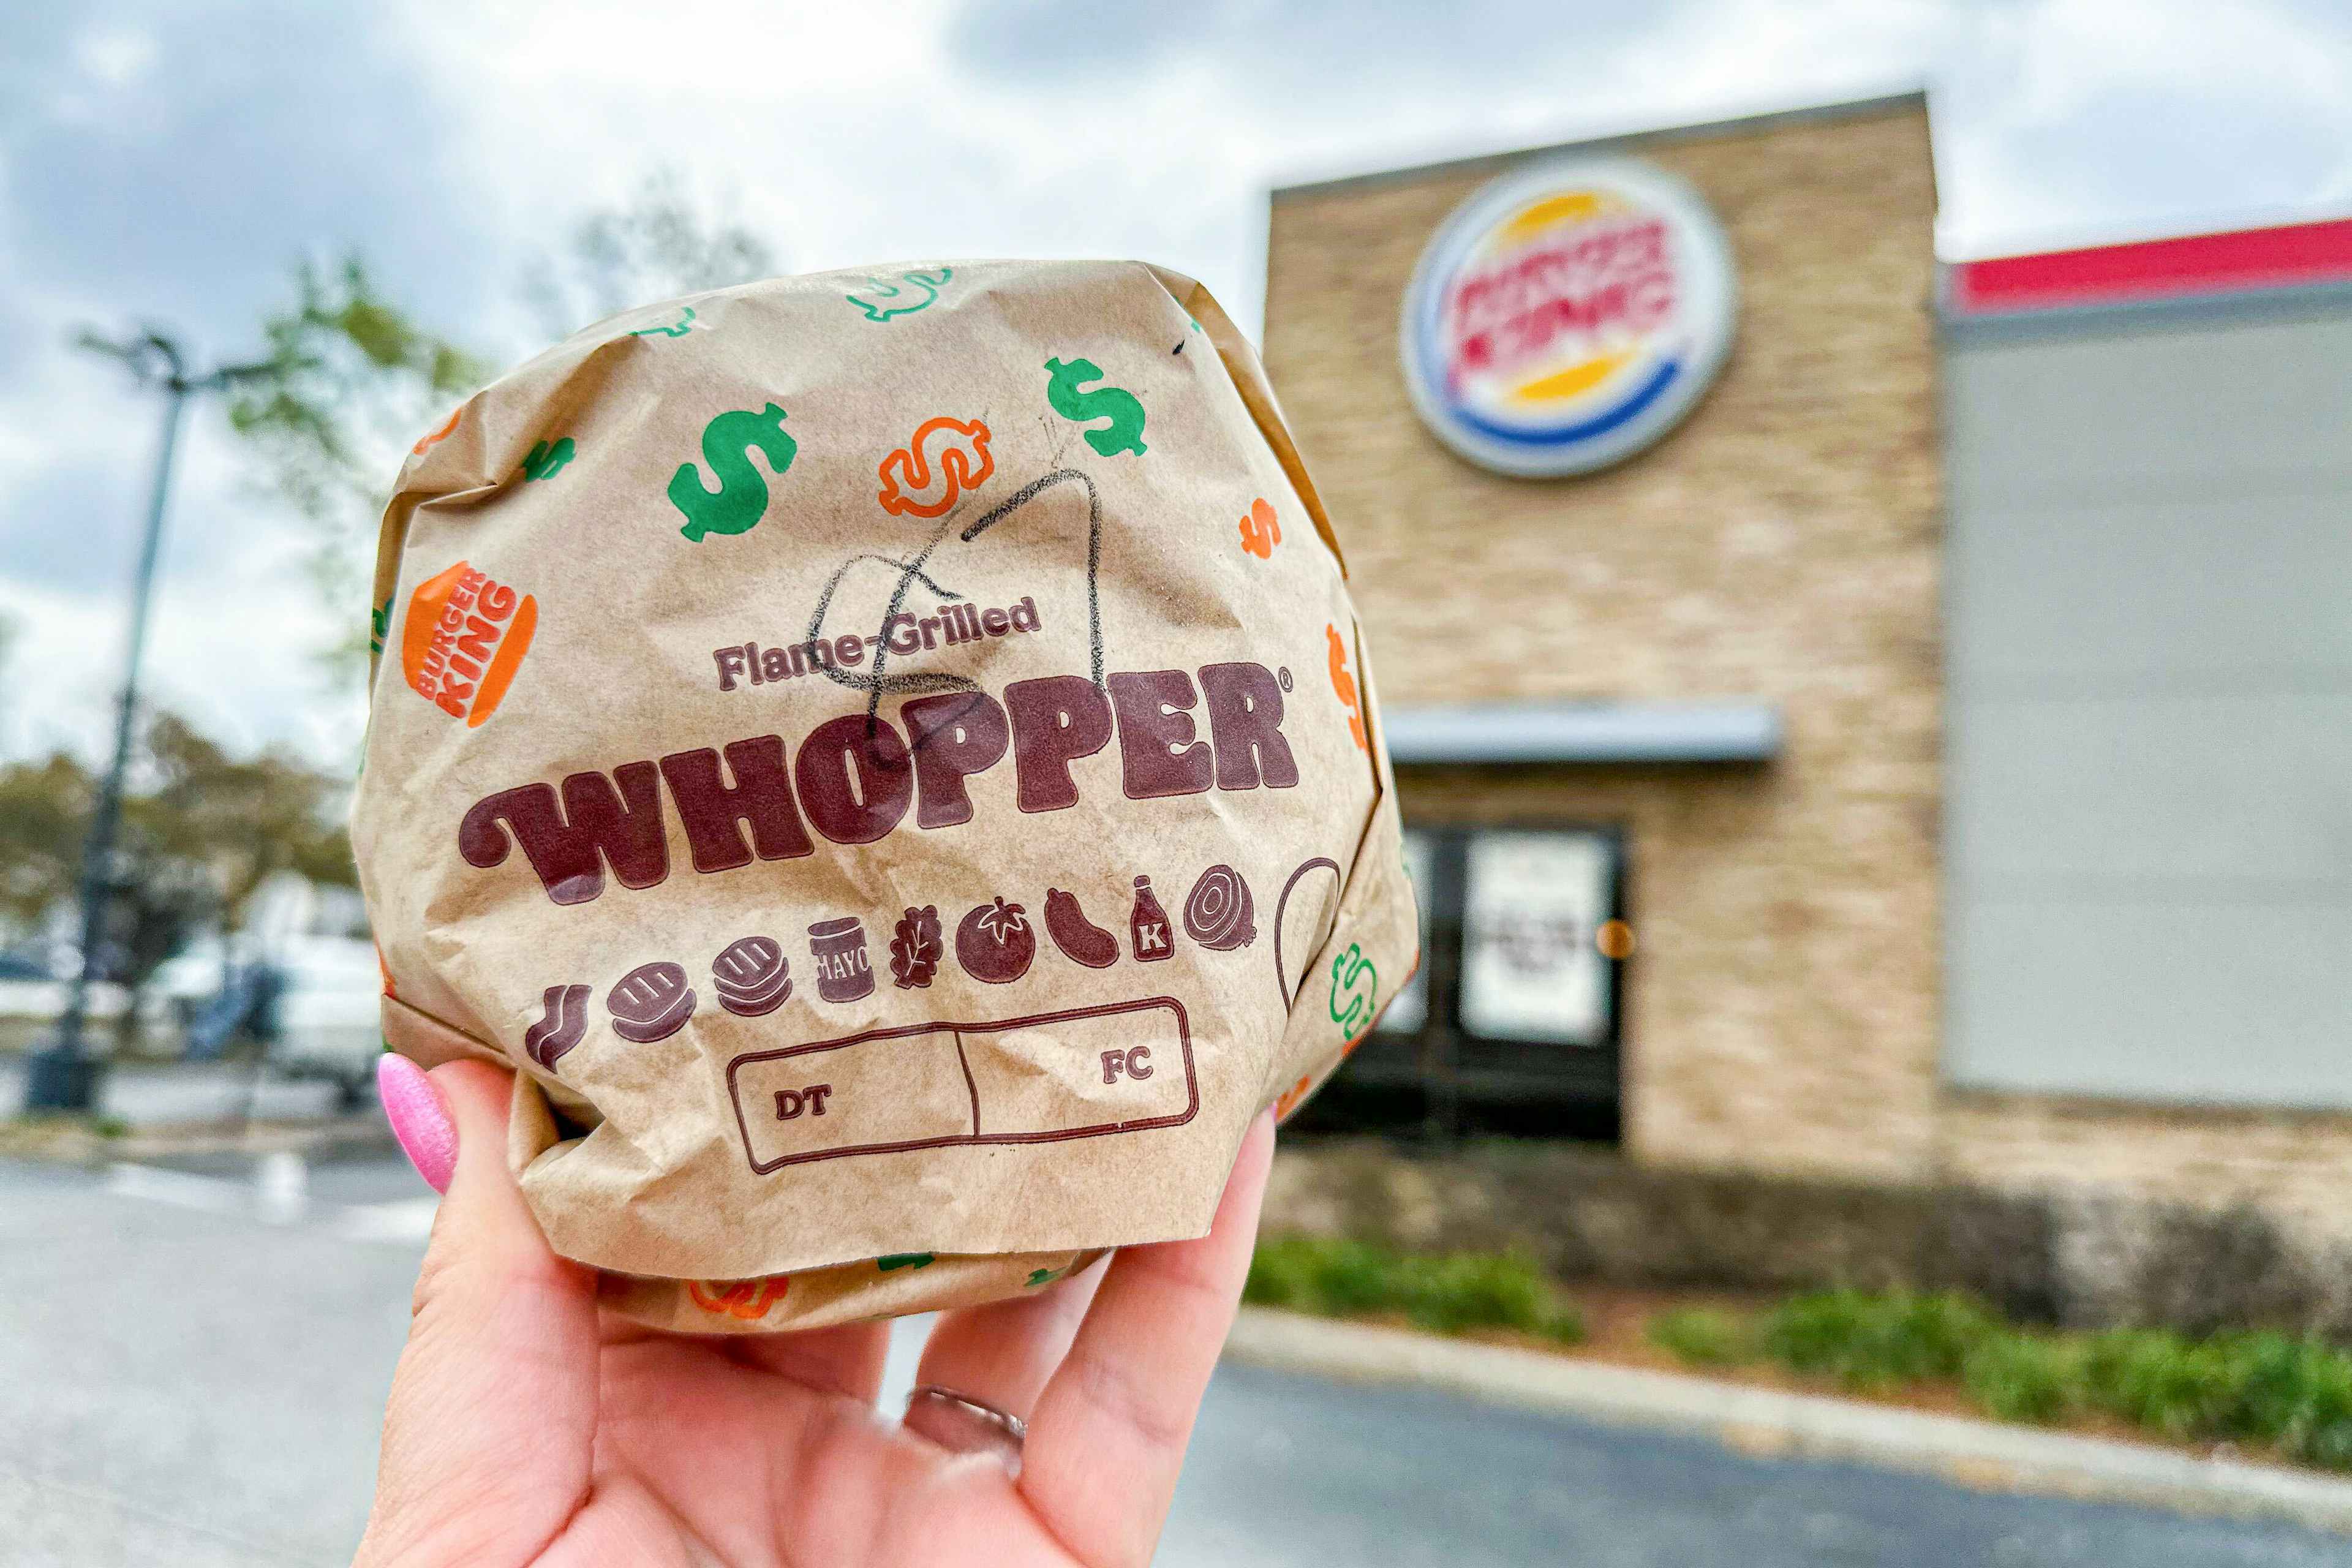 burger-king-free-whopper-offer-deals-hamburger-drink-kcl1-3x2